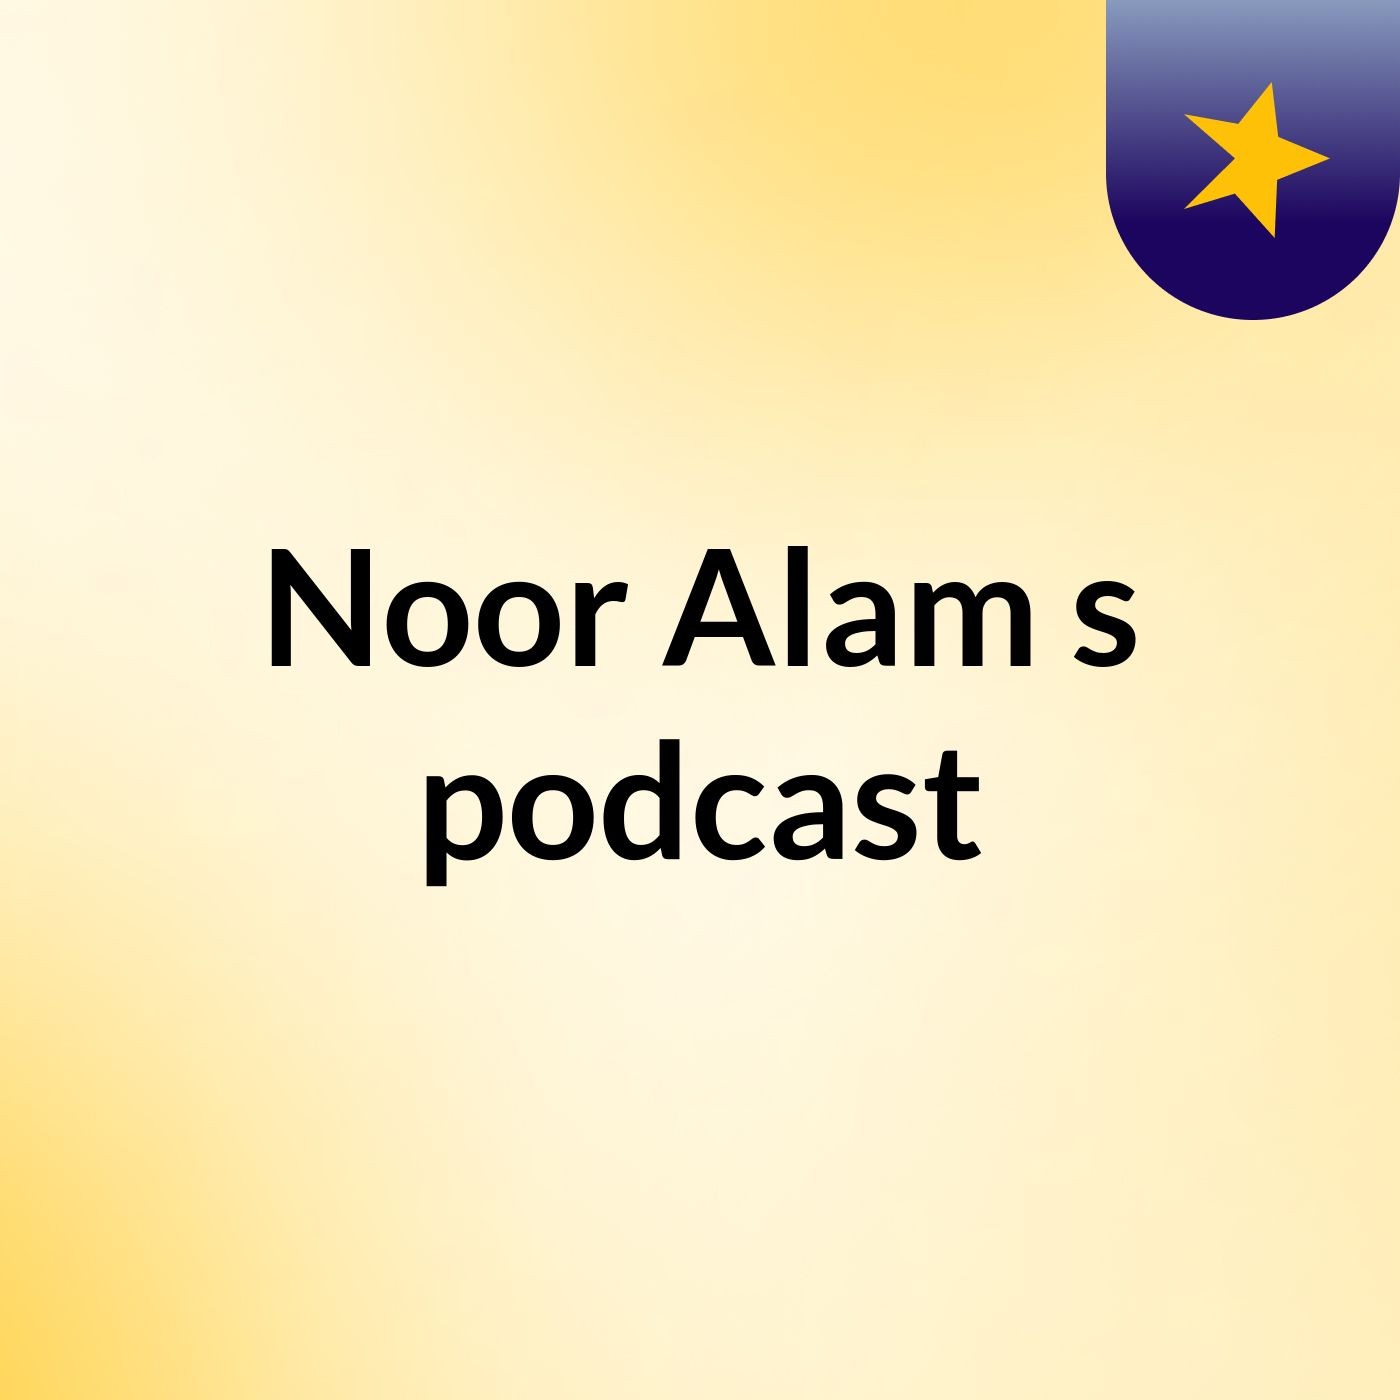 Episode 2 - Noor Alam's podcast